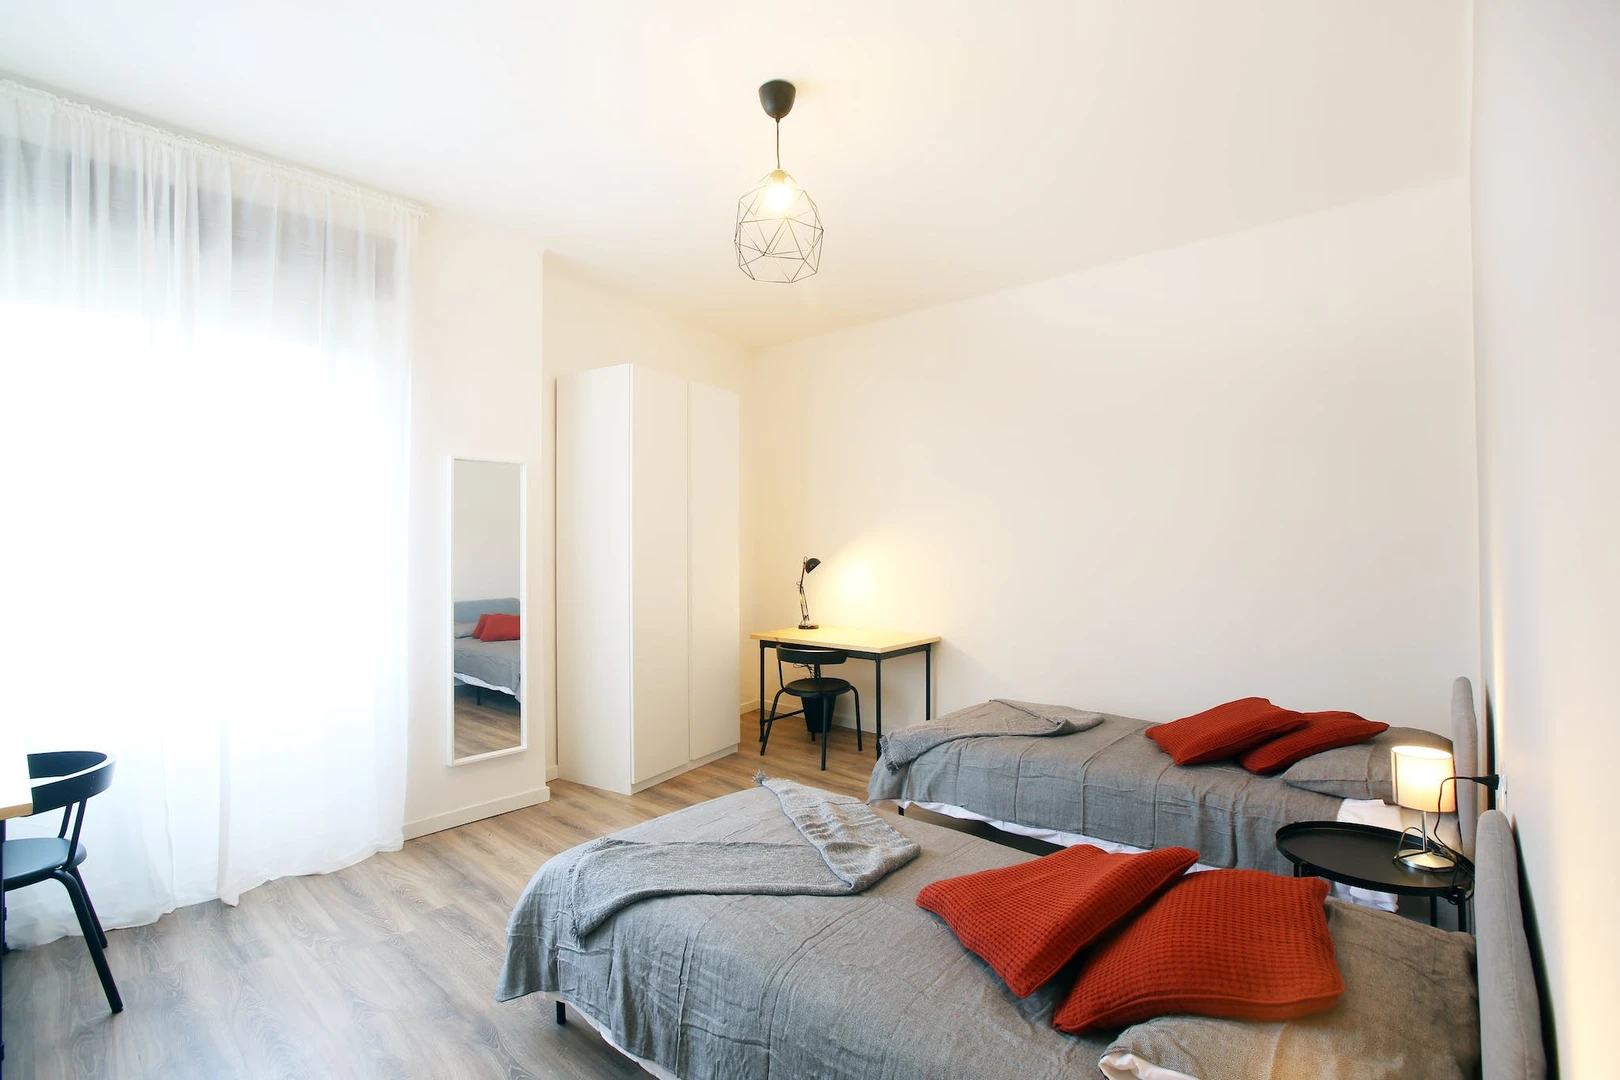 Stanza in condivisione in un appartamento di 3 camere da letto Modena